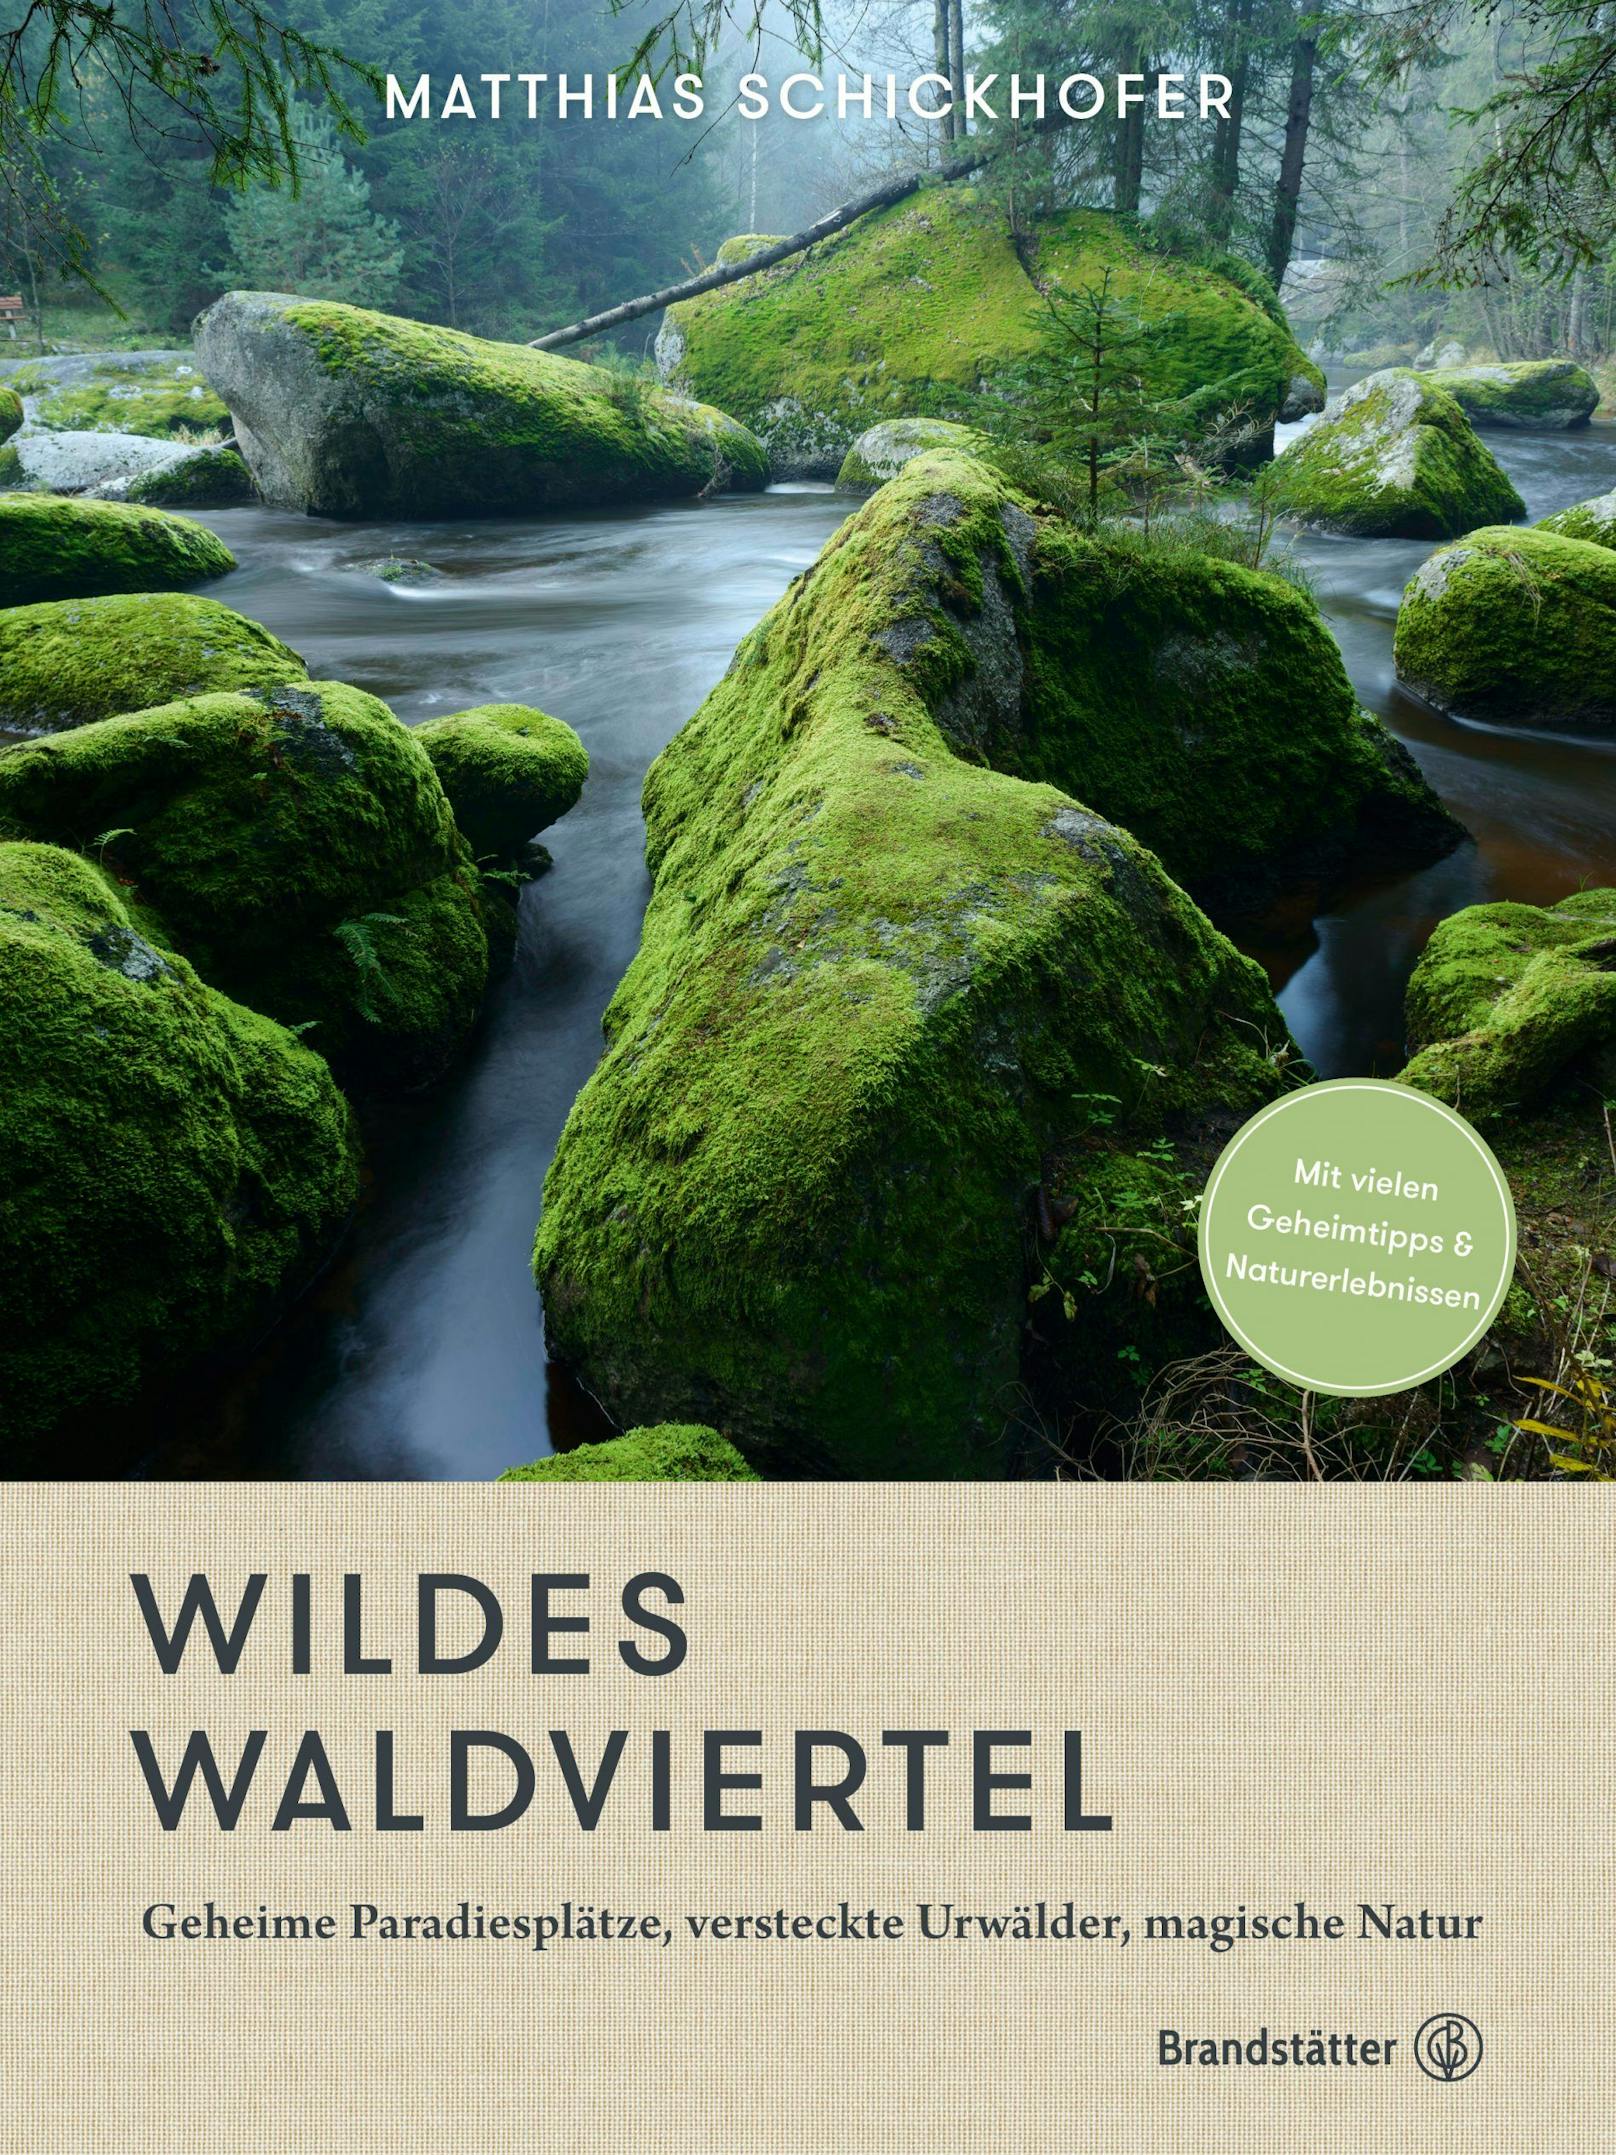 Neuer Bildband "Wildes Waldviertel" zeigt erstmals Fotos von unbekannten Urwäldern und Mooren "vor der Haustür".